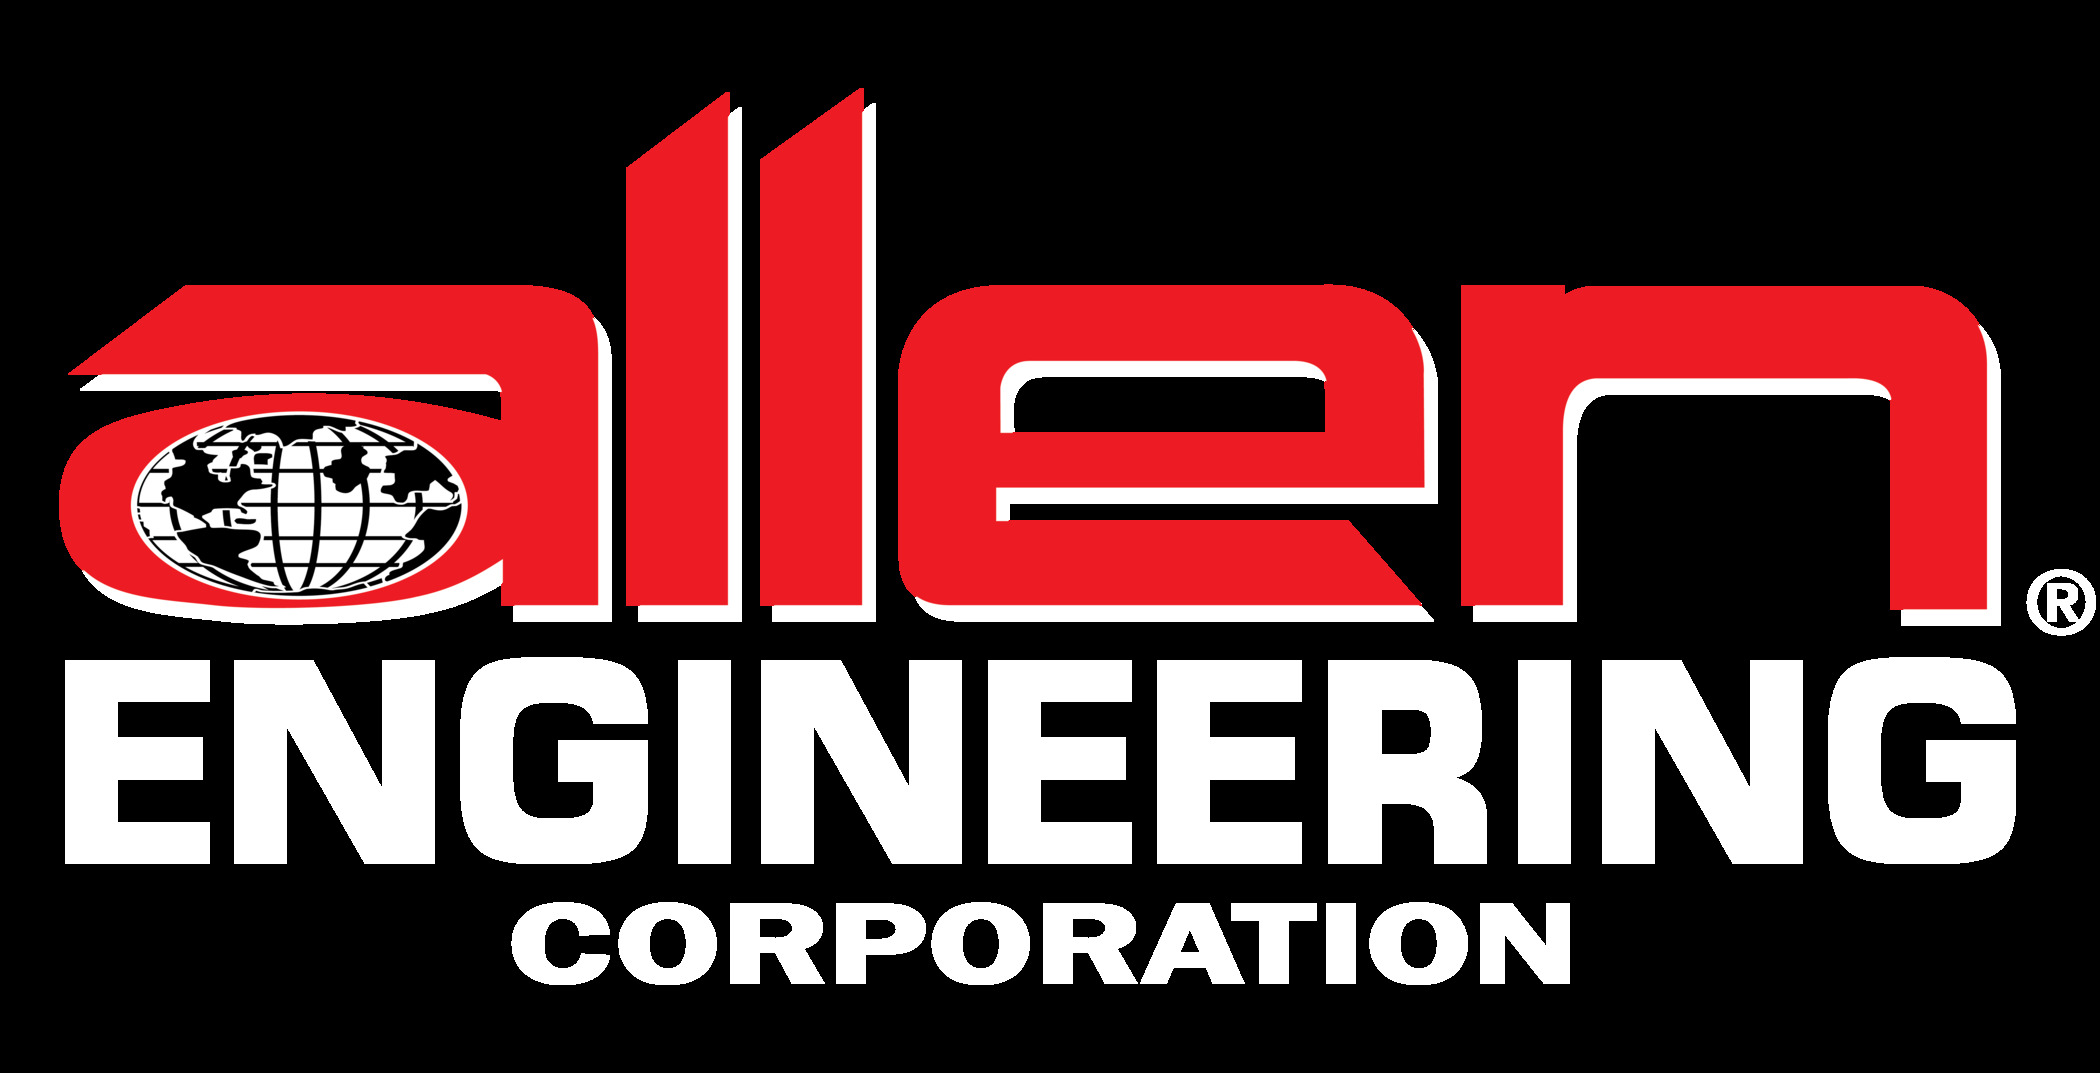 Allen Engineering